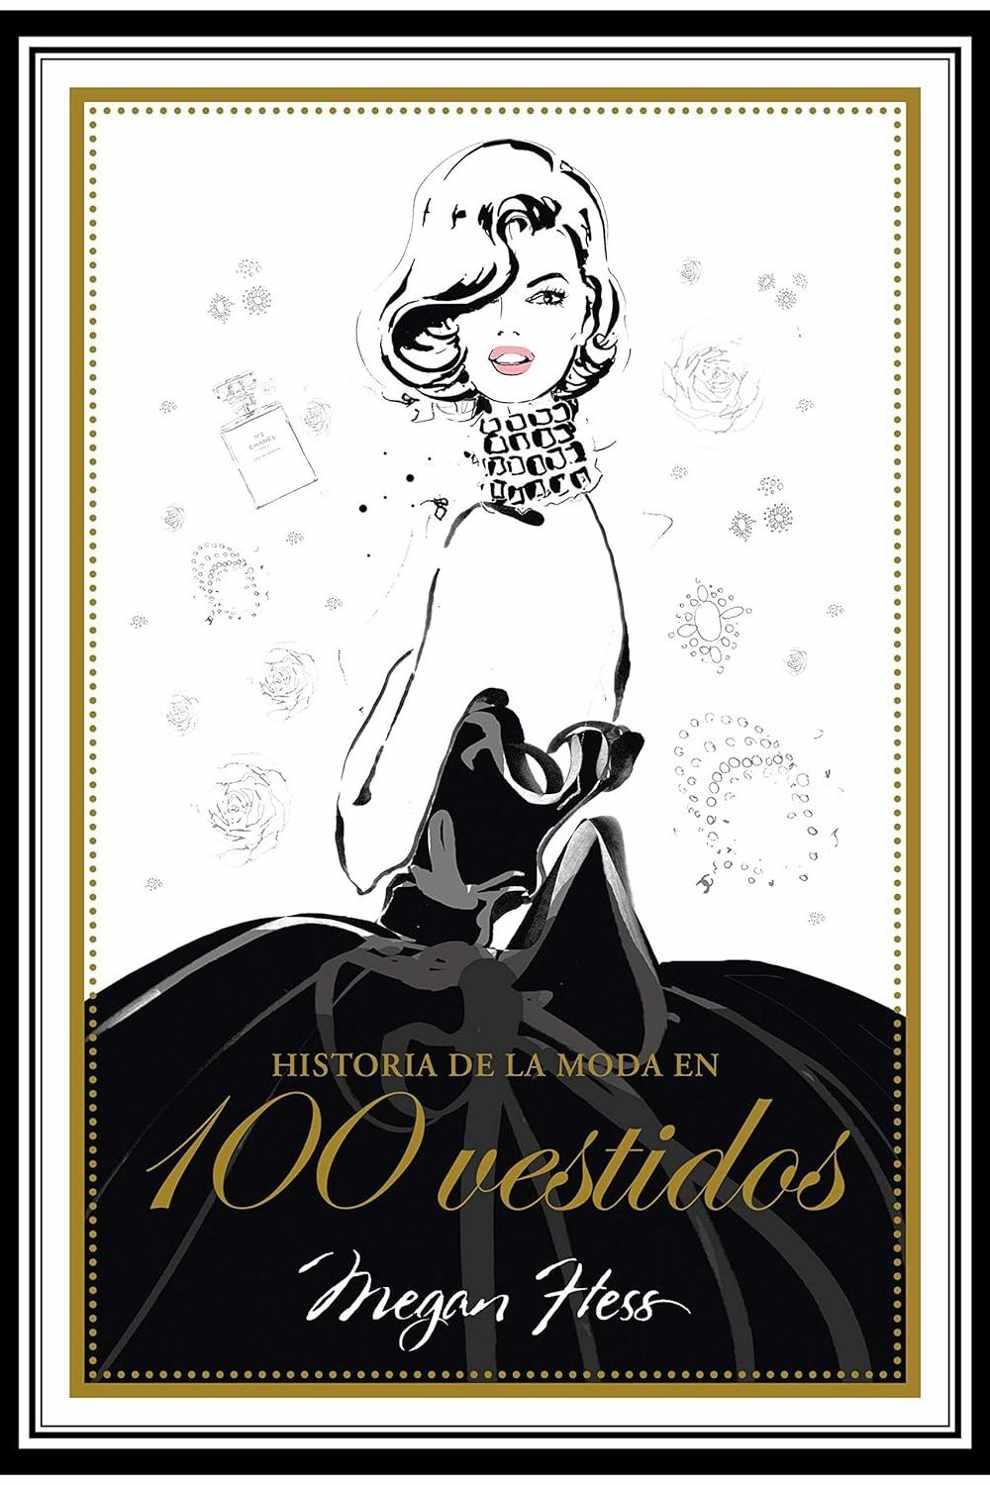 'Historia de la moda en 100 vestidos' de Mengan Hess